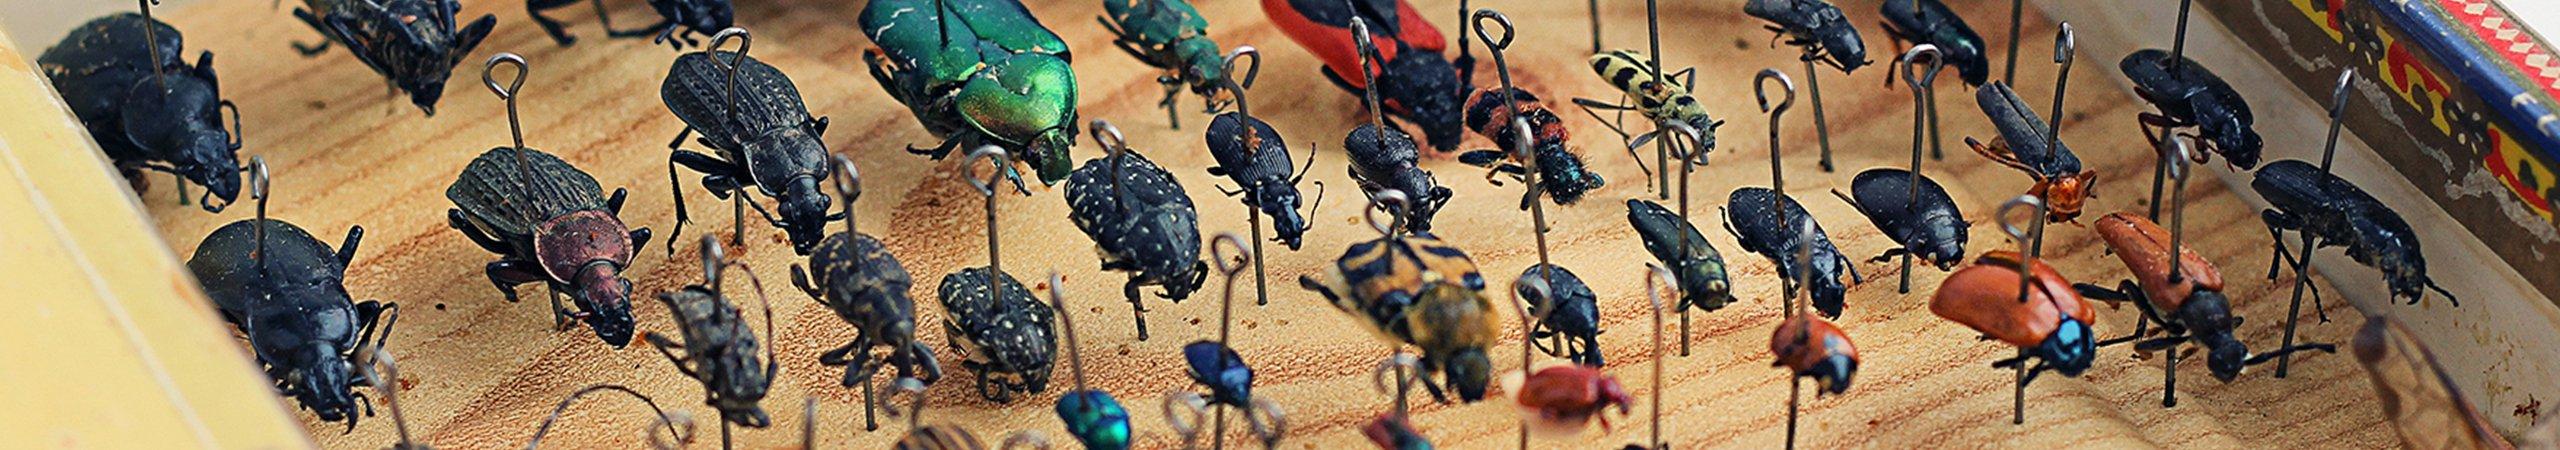 an entomology collection